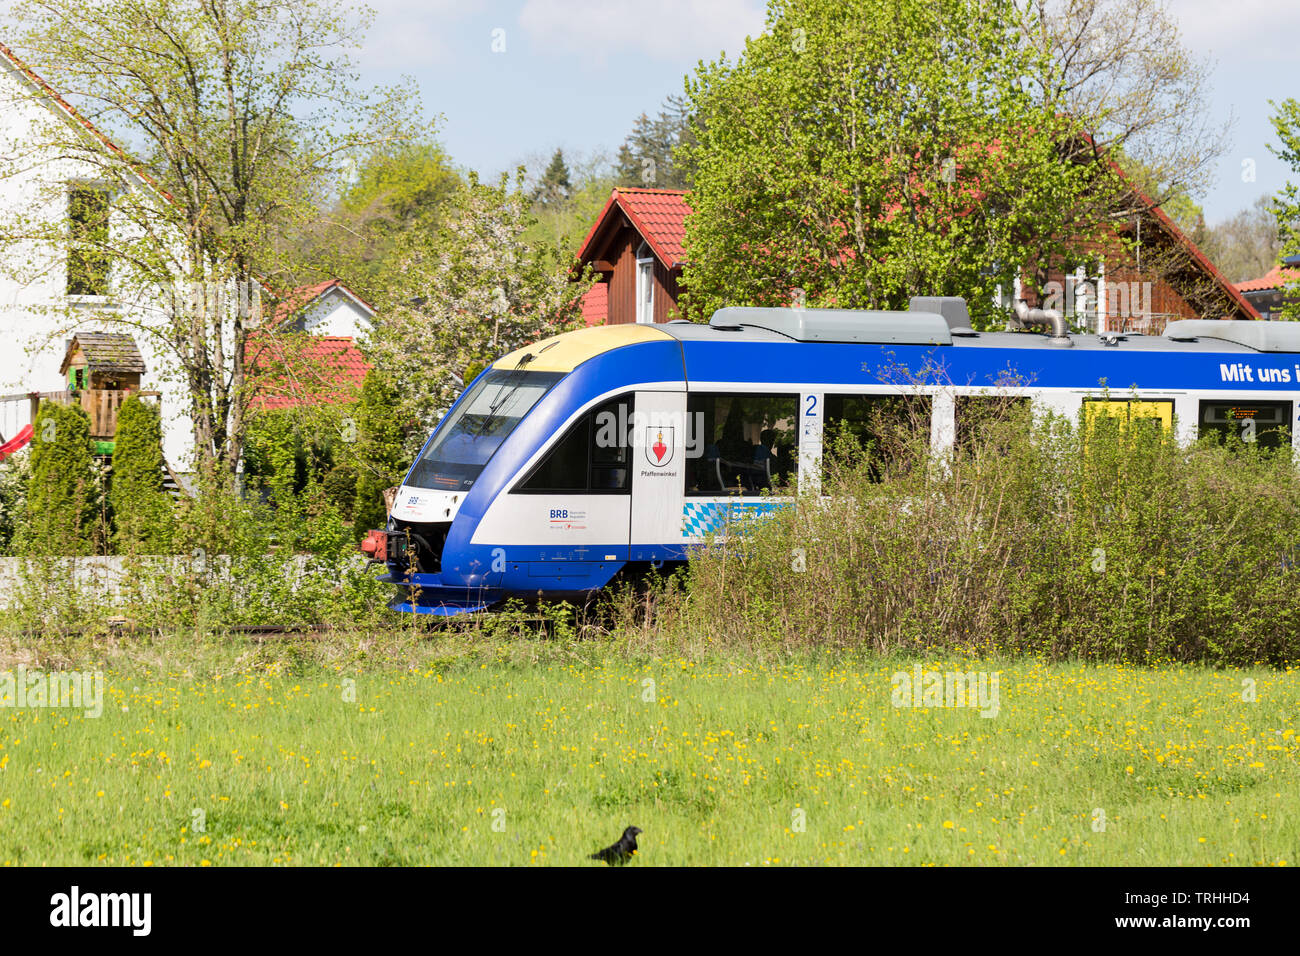 Zug der Bayerischen Regiobahn (BRB) gleiten durch die Stadt (in der Nähe von Utting am Ammersee). BRB ist eine 100%ige Tochtergesellschaft der französischen Transdev Gruppe Stockfoto